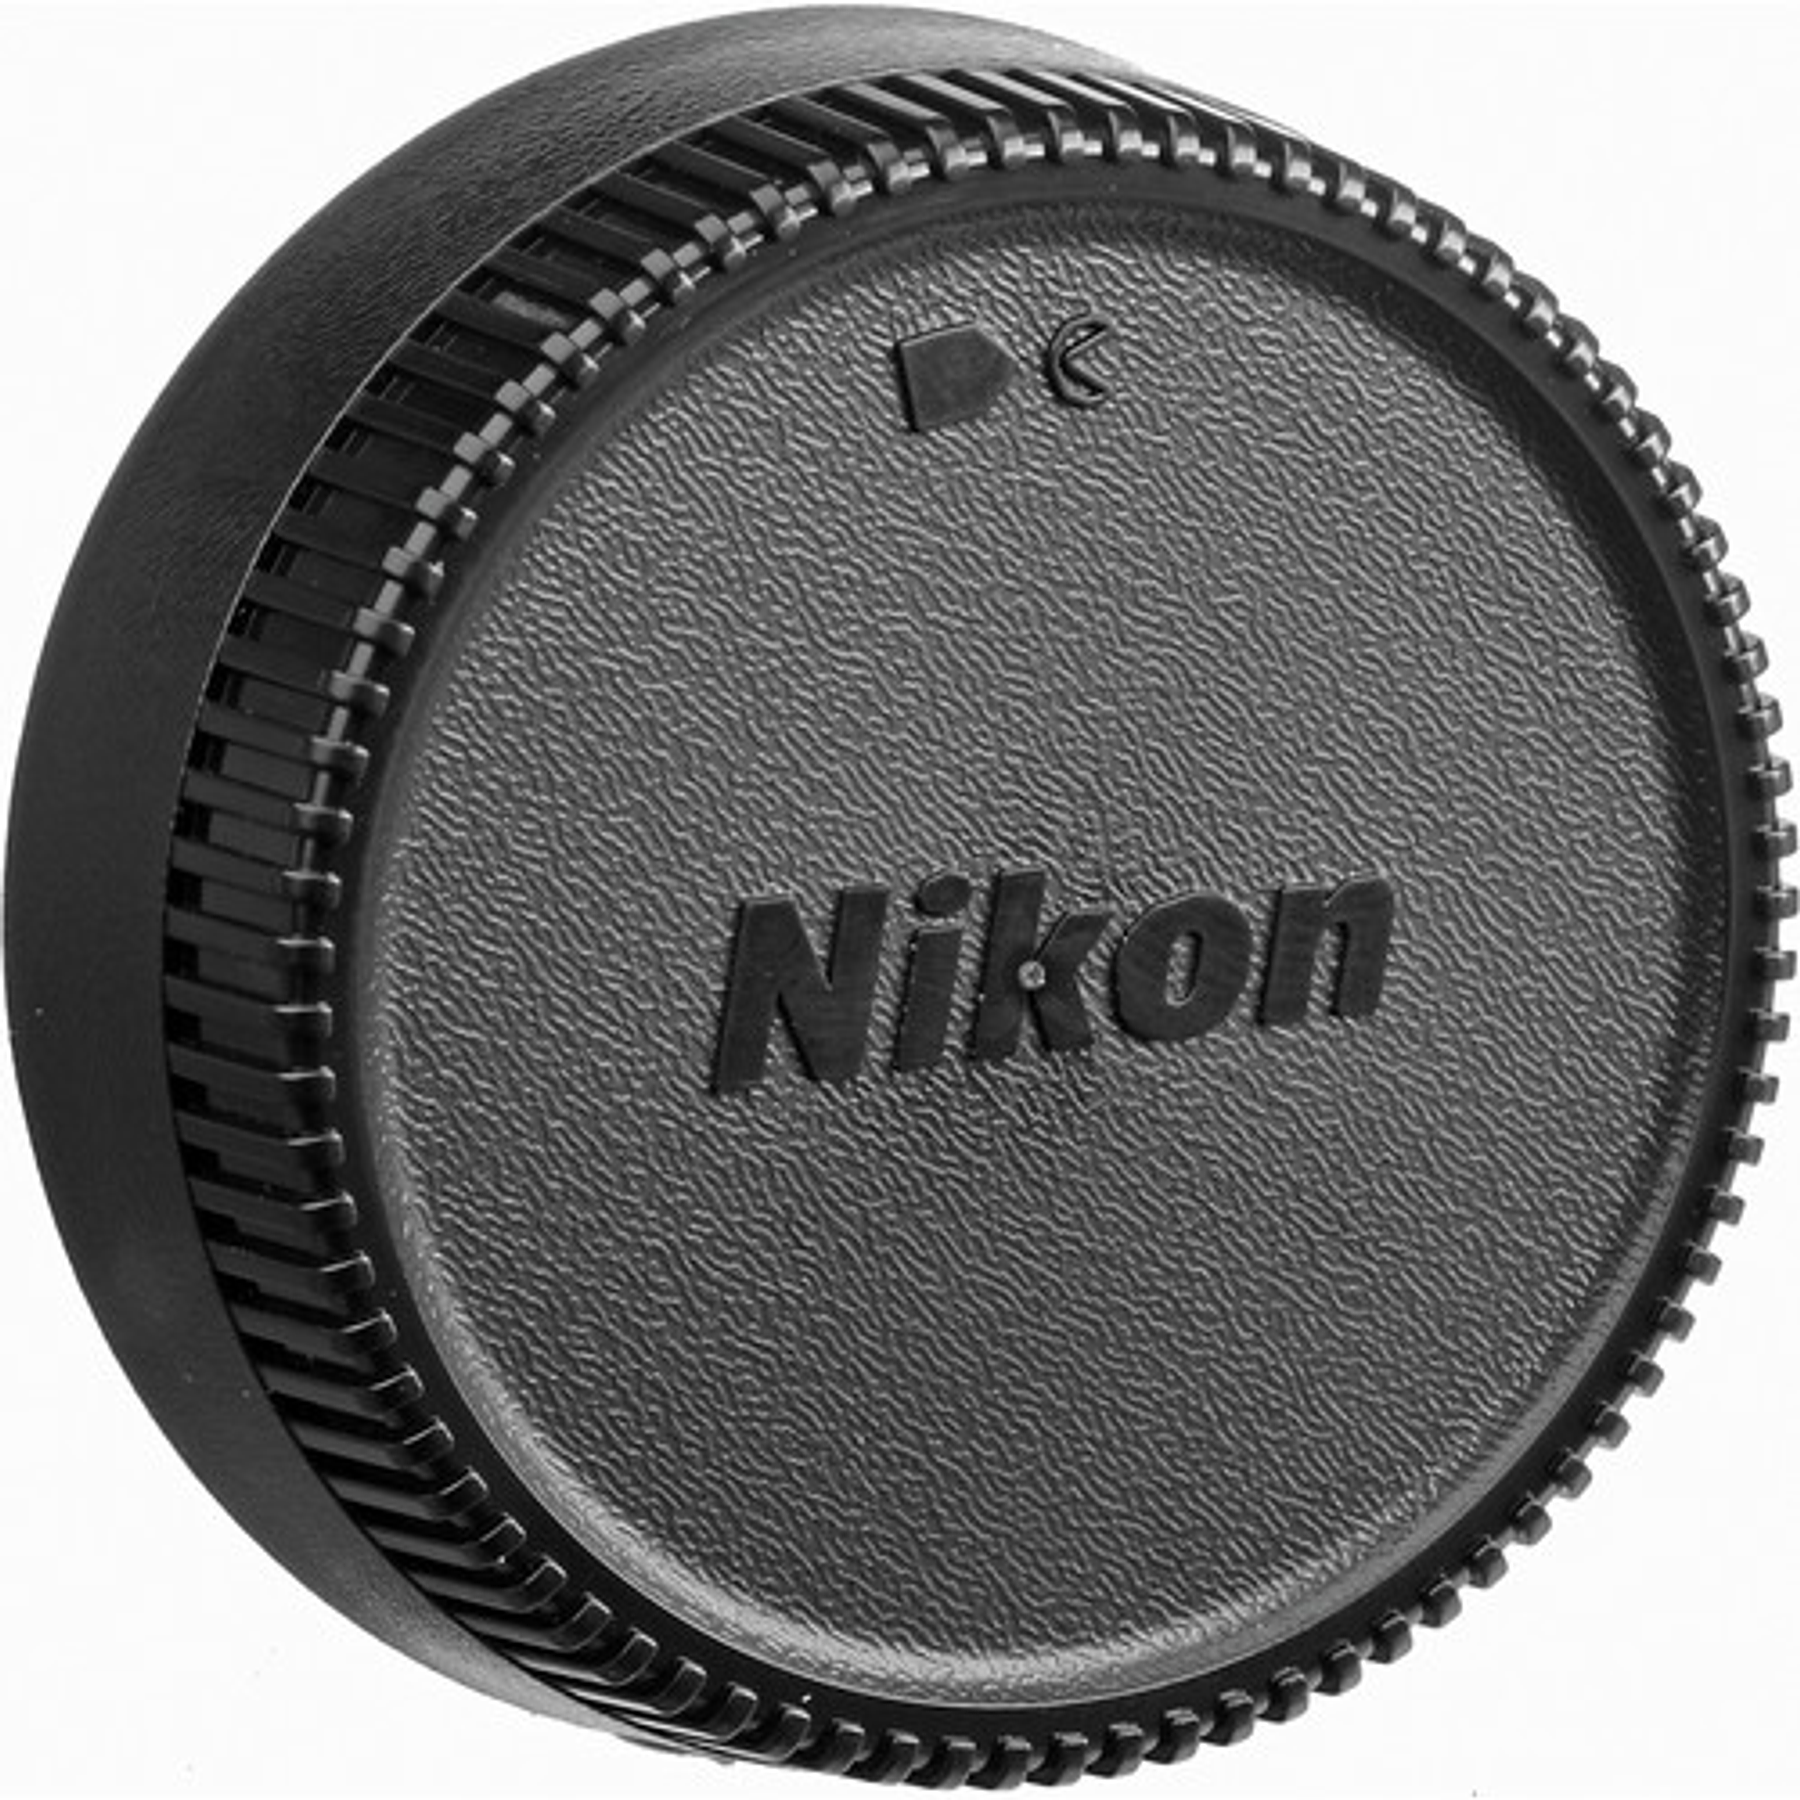 Nikon F AF-S 14-24 f2.8G ED 